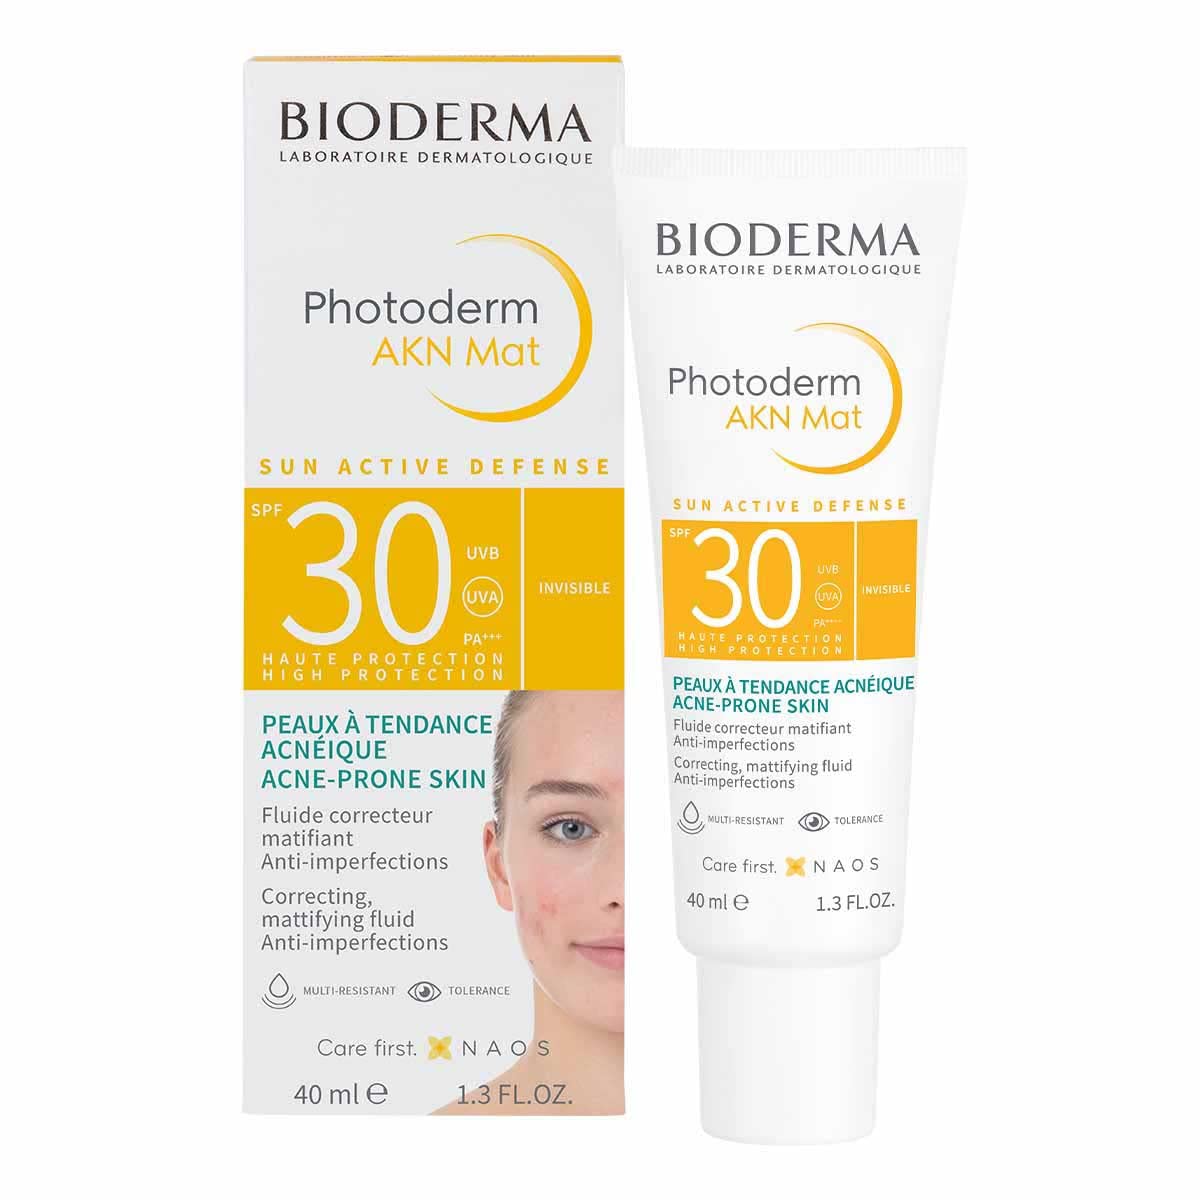 Bioderma Photoderm AKN Mat SPF 30 UVA 13, 40ml sunscreen from Bioderma